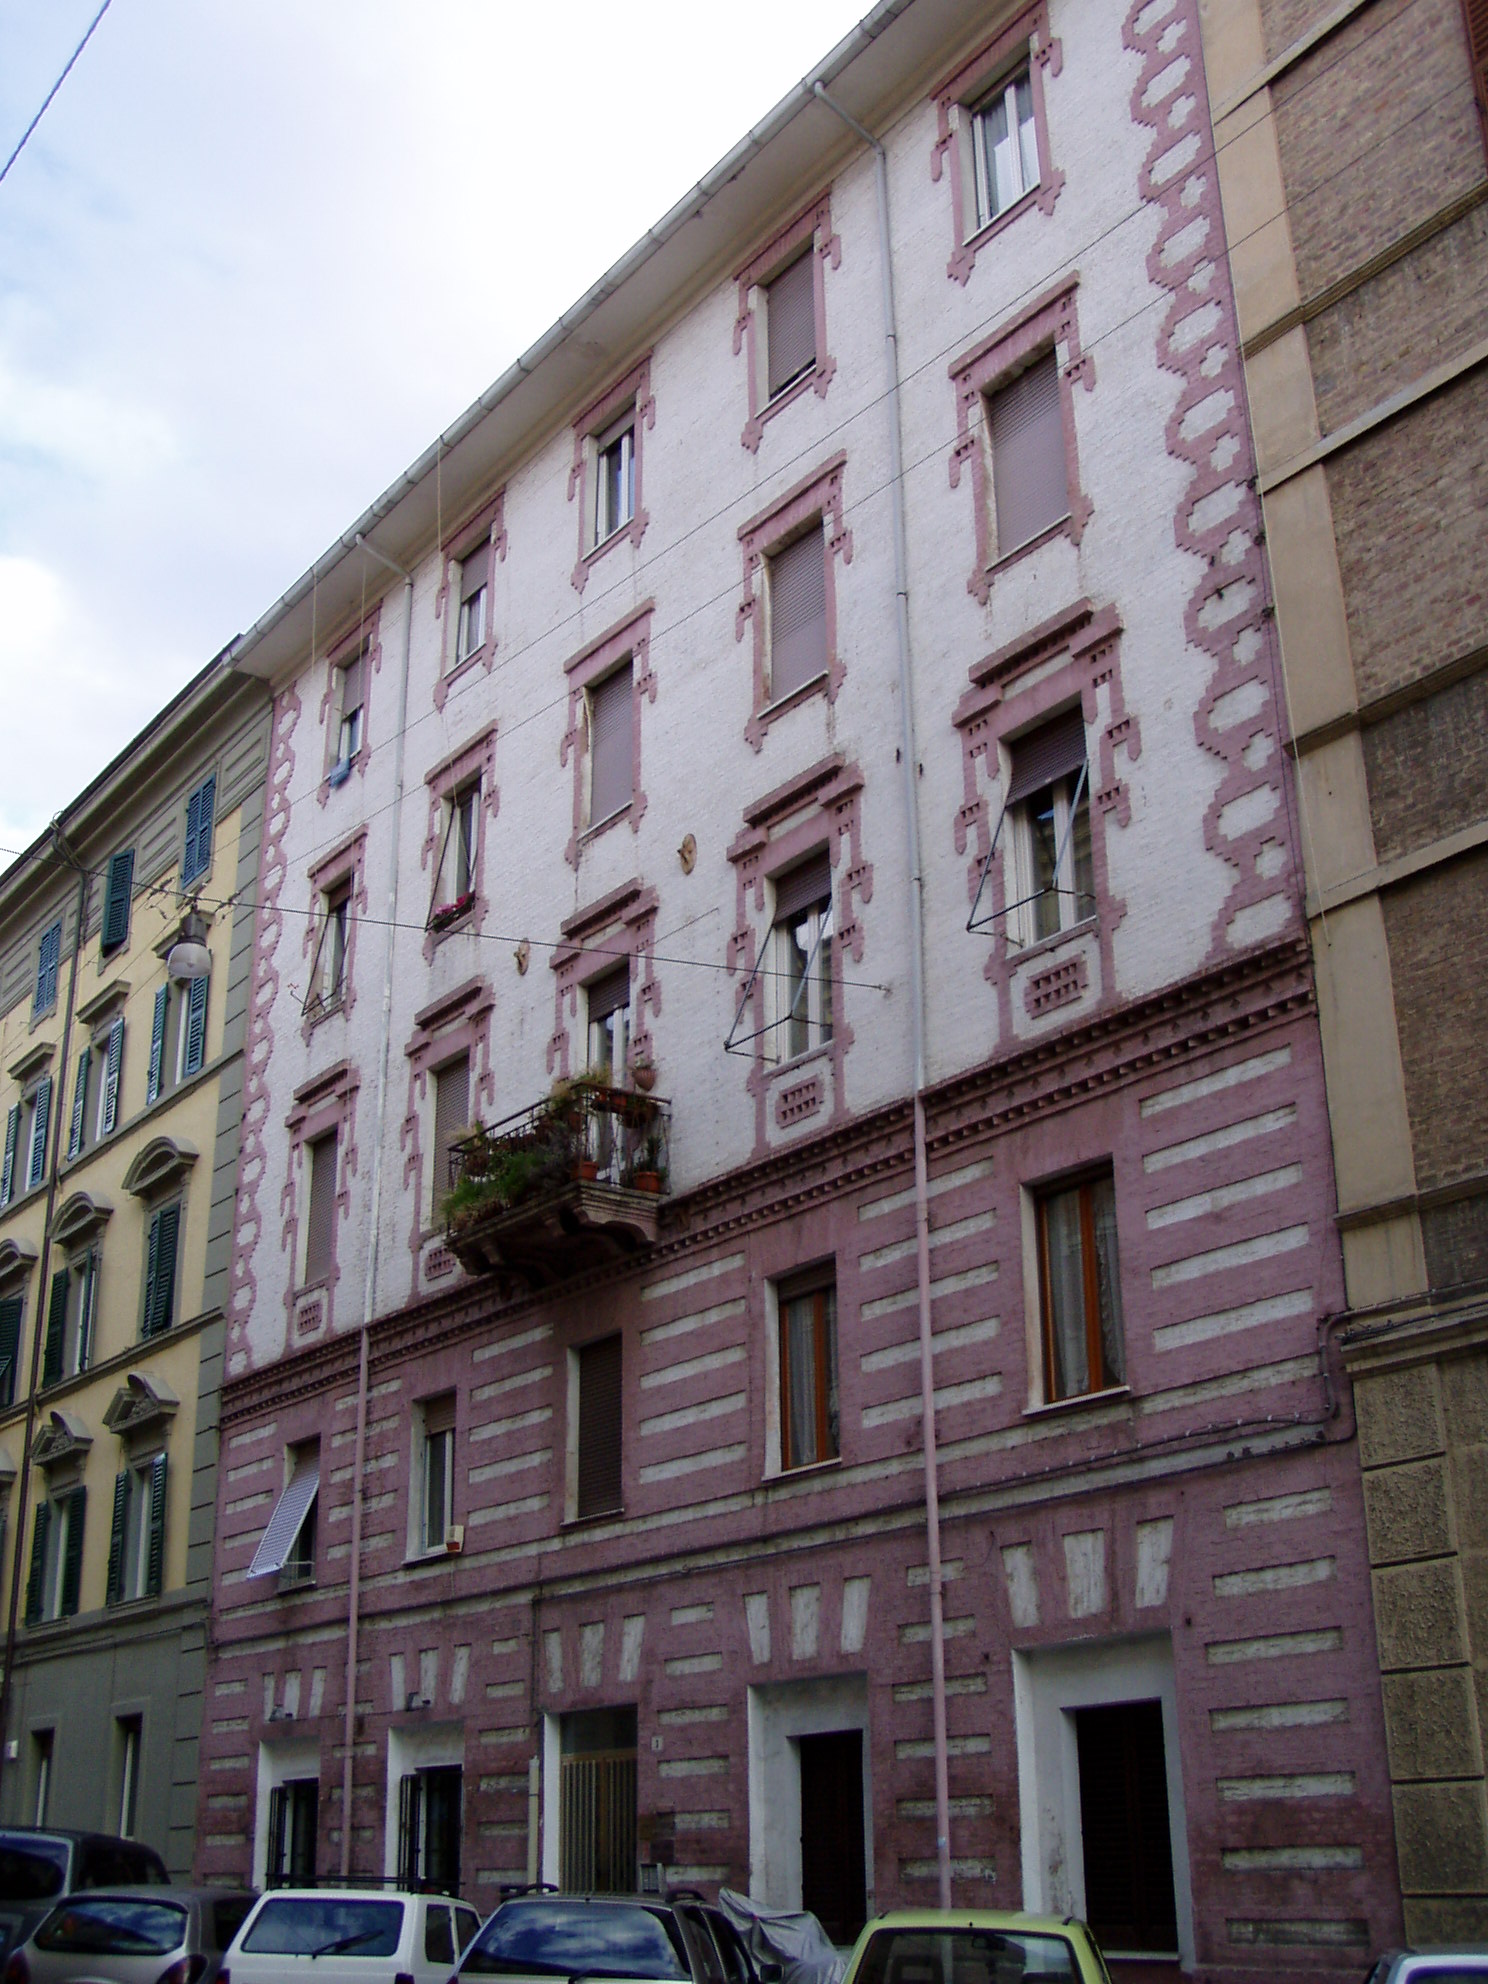 Palazzo di appartamenti (palazzo) - Ancona (AN) 